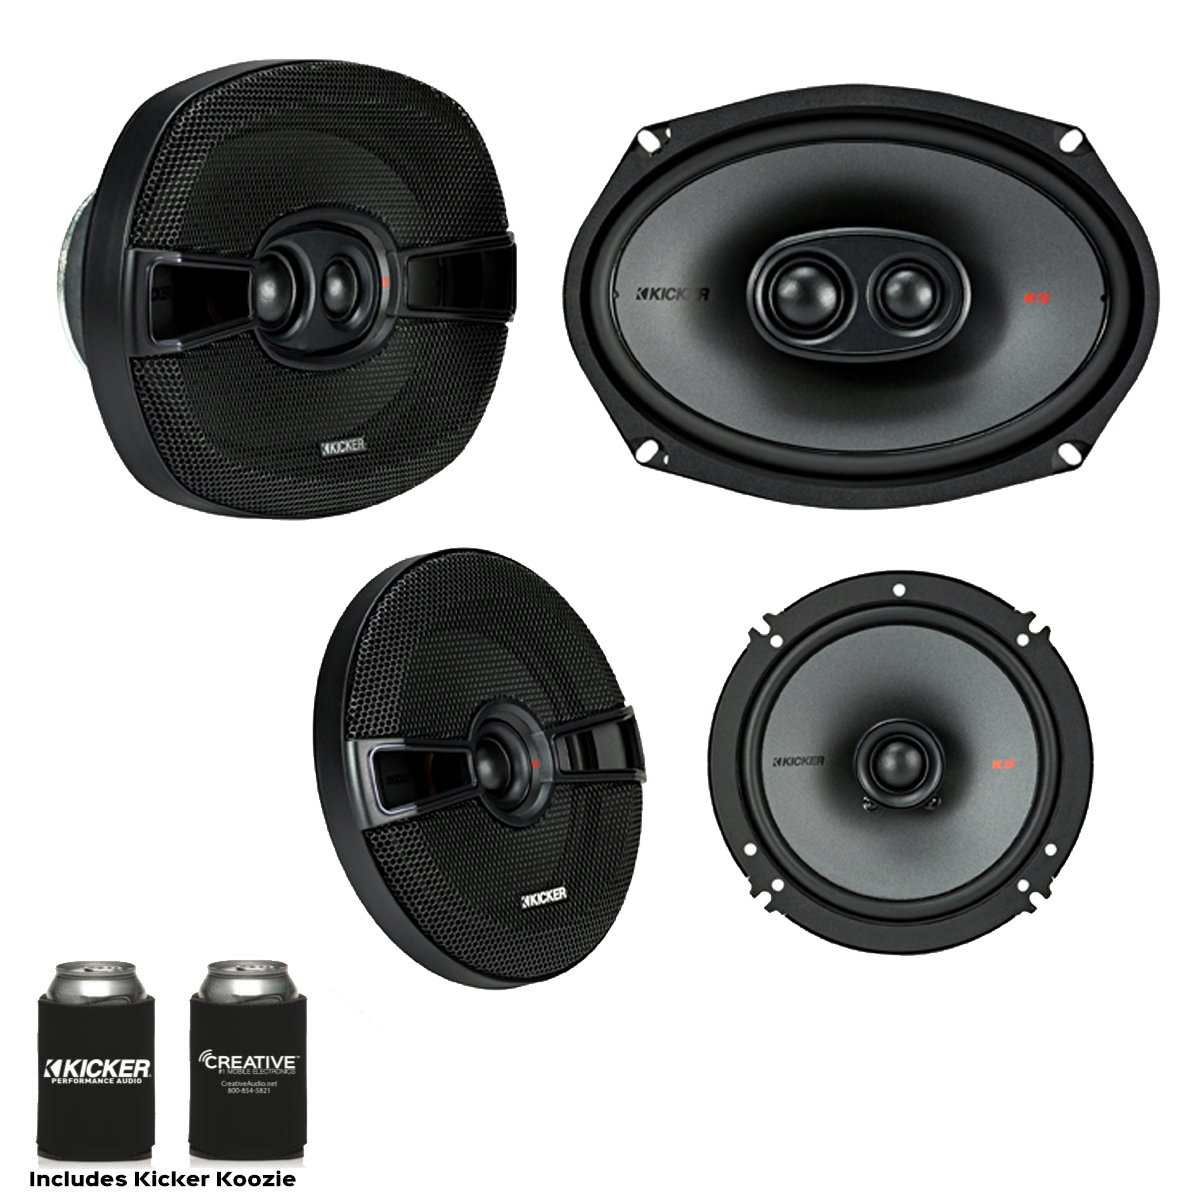 Kicker Speaker Bundle - A Pair of Kicker 6.5 Inch & a Pair of 6x9 KS-Series Speakers, KSC6504 & KSC69304